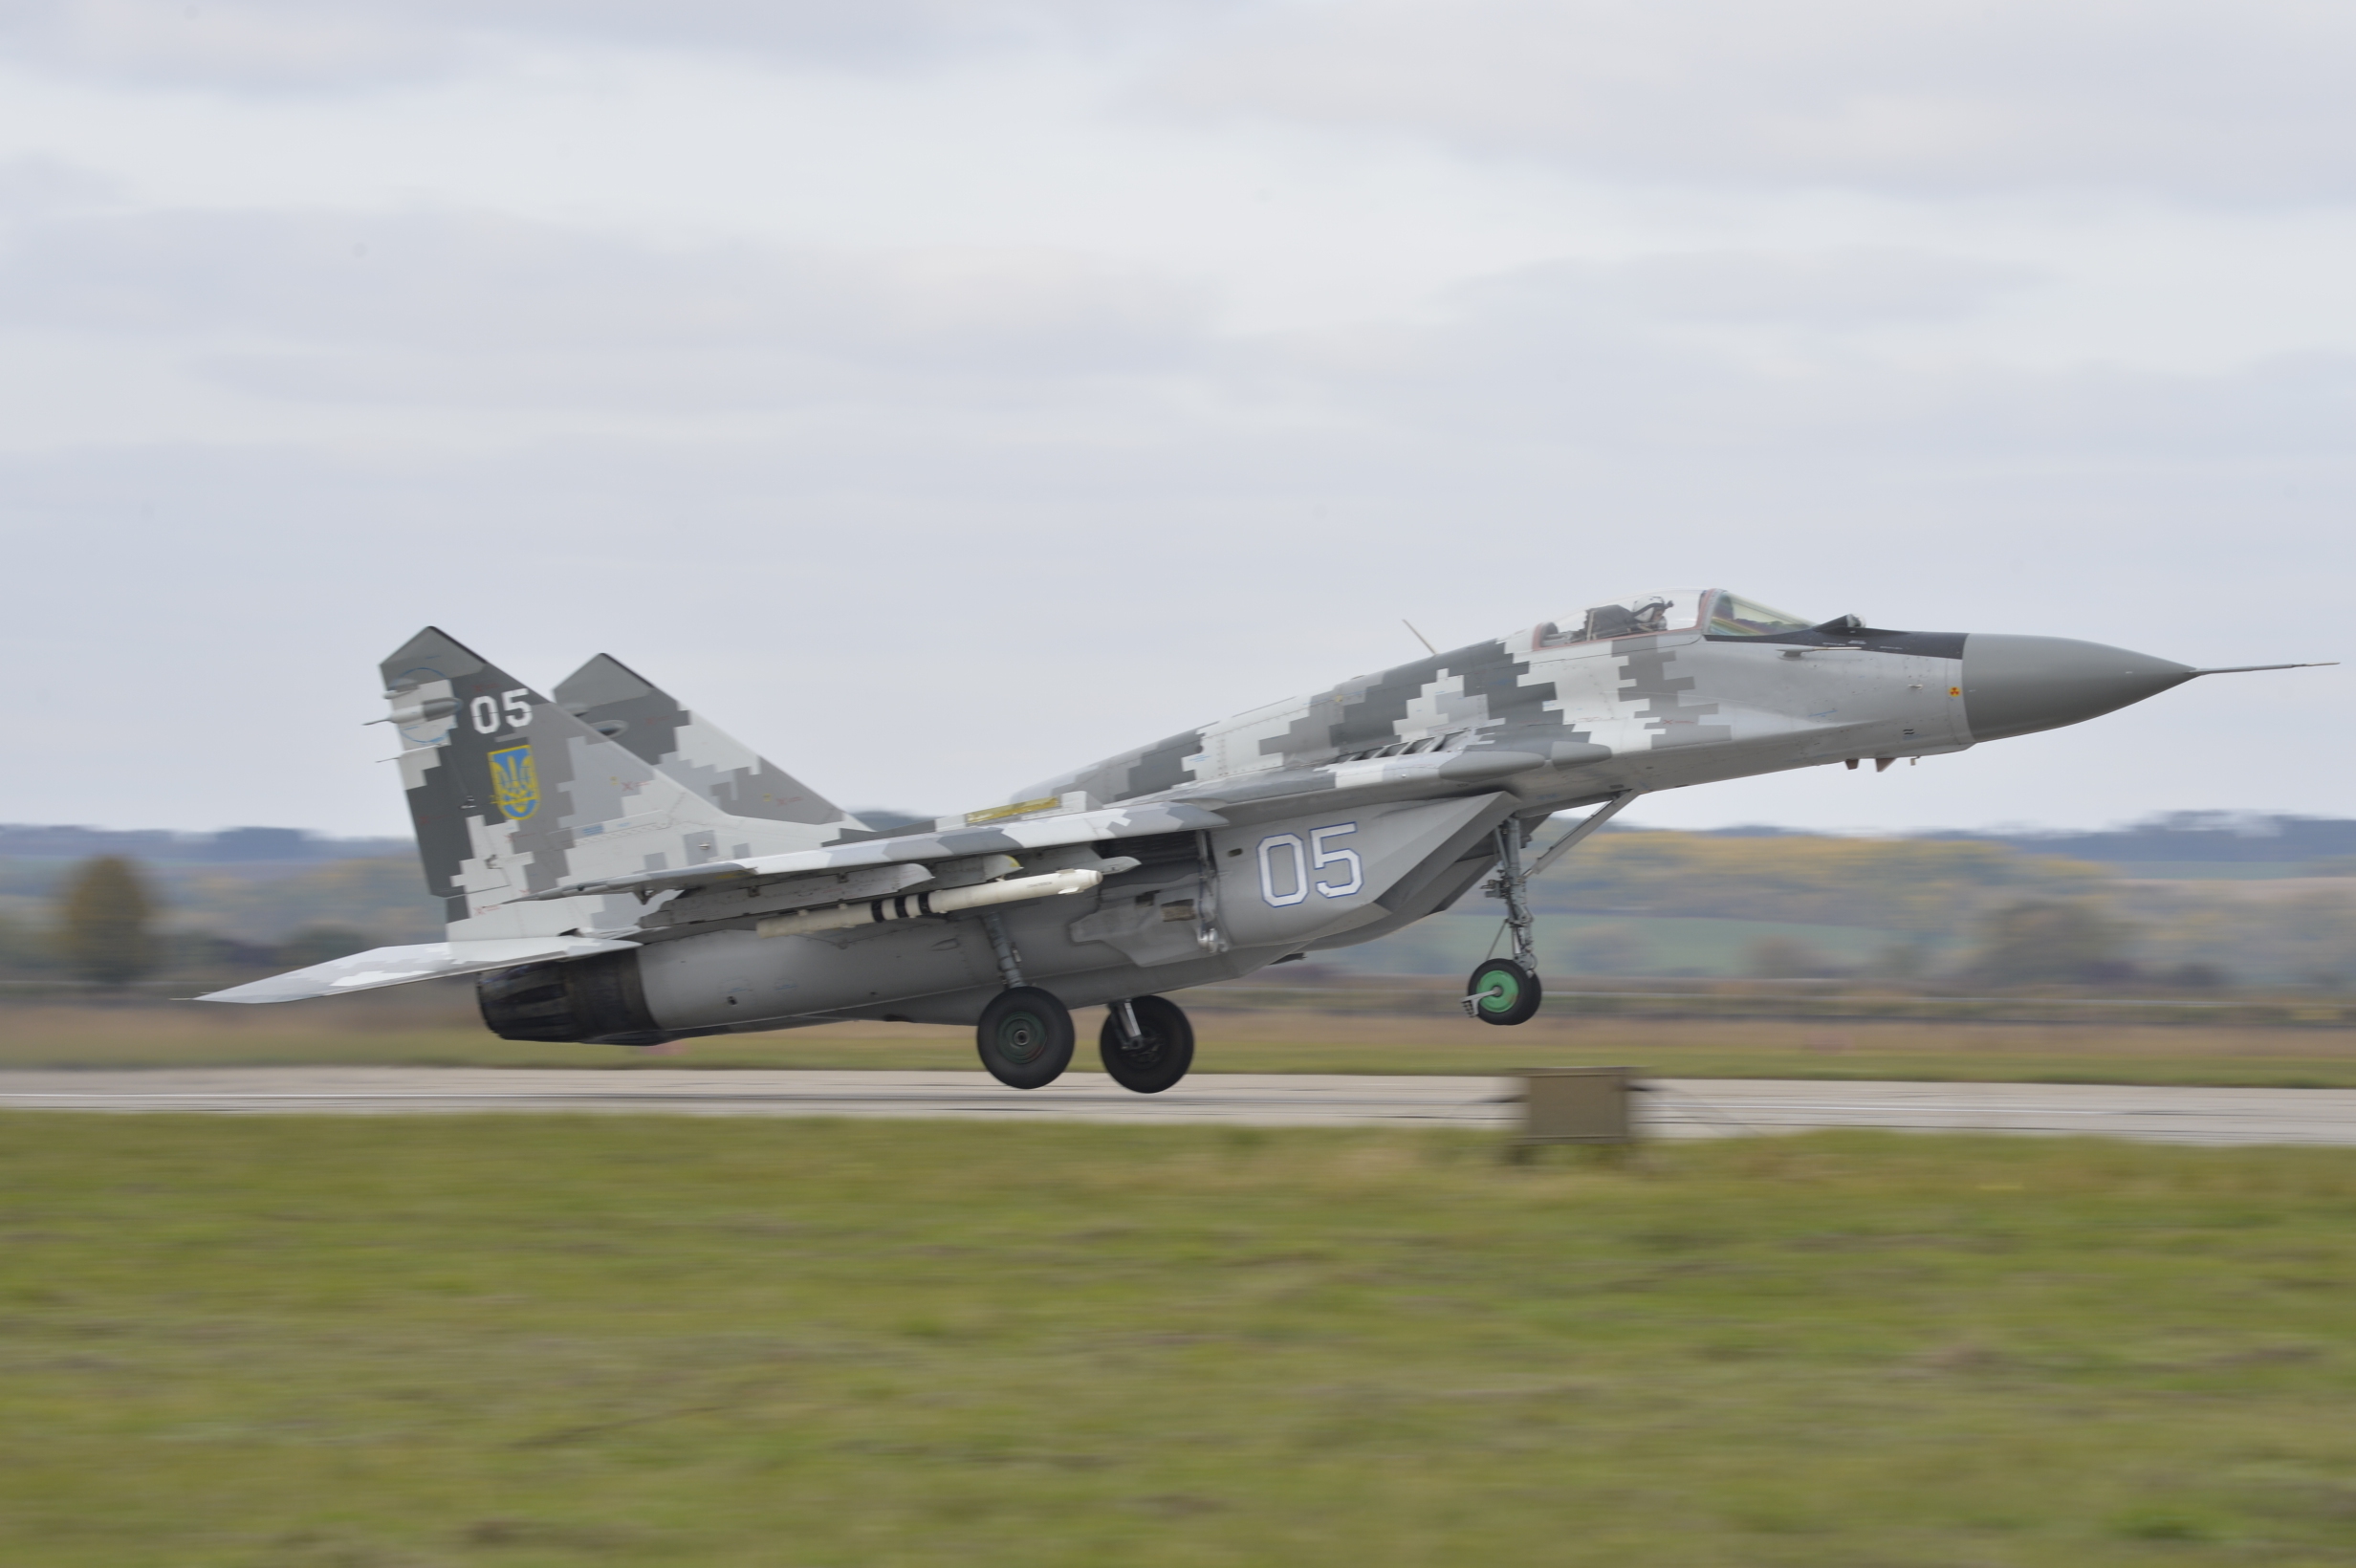 Словакия передала Украине четыре истребителя МиГ-29